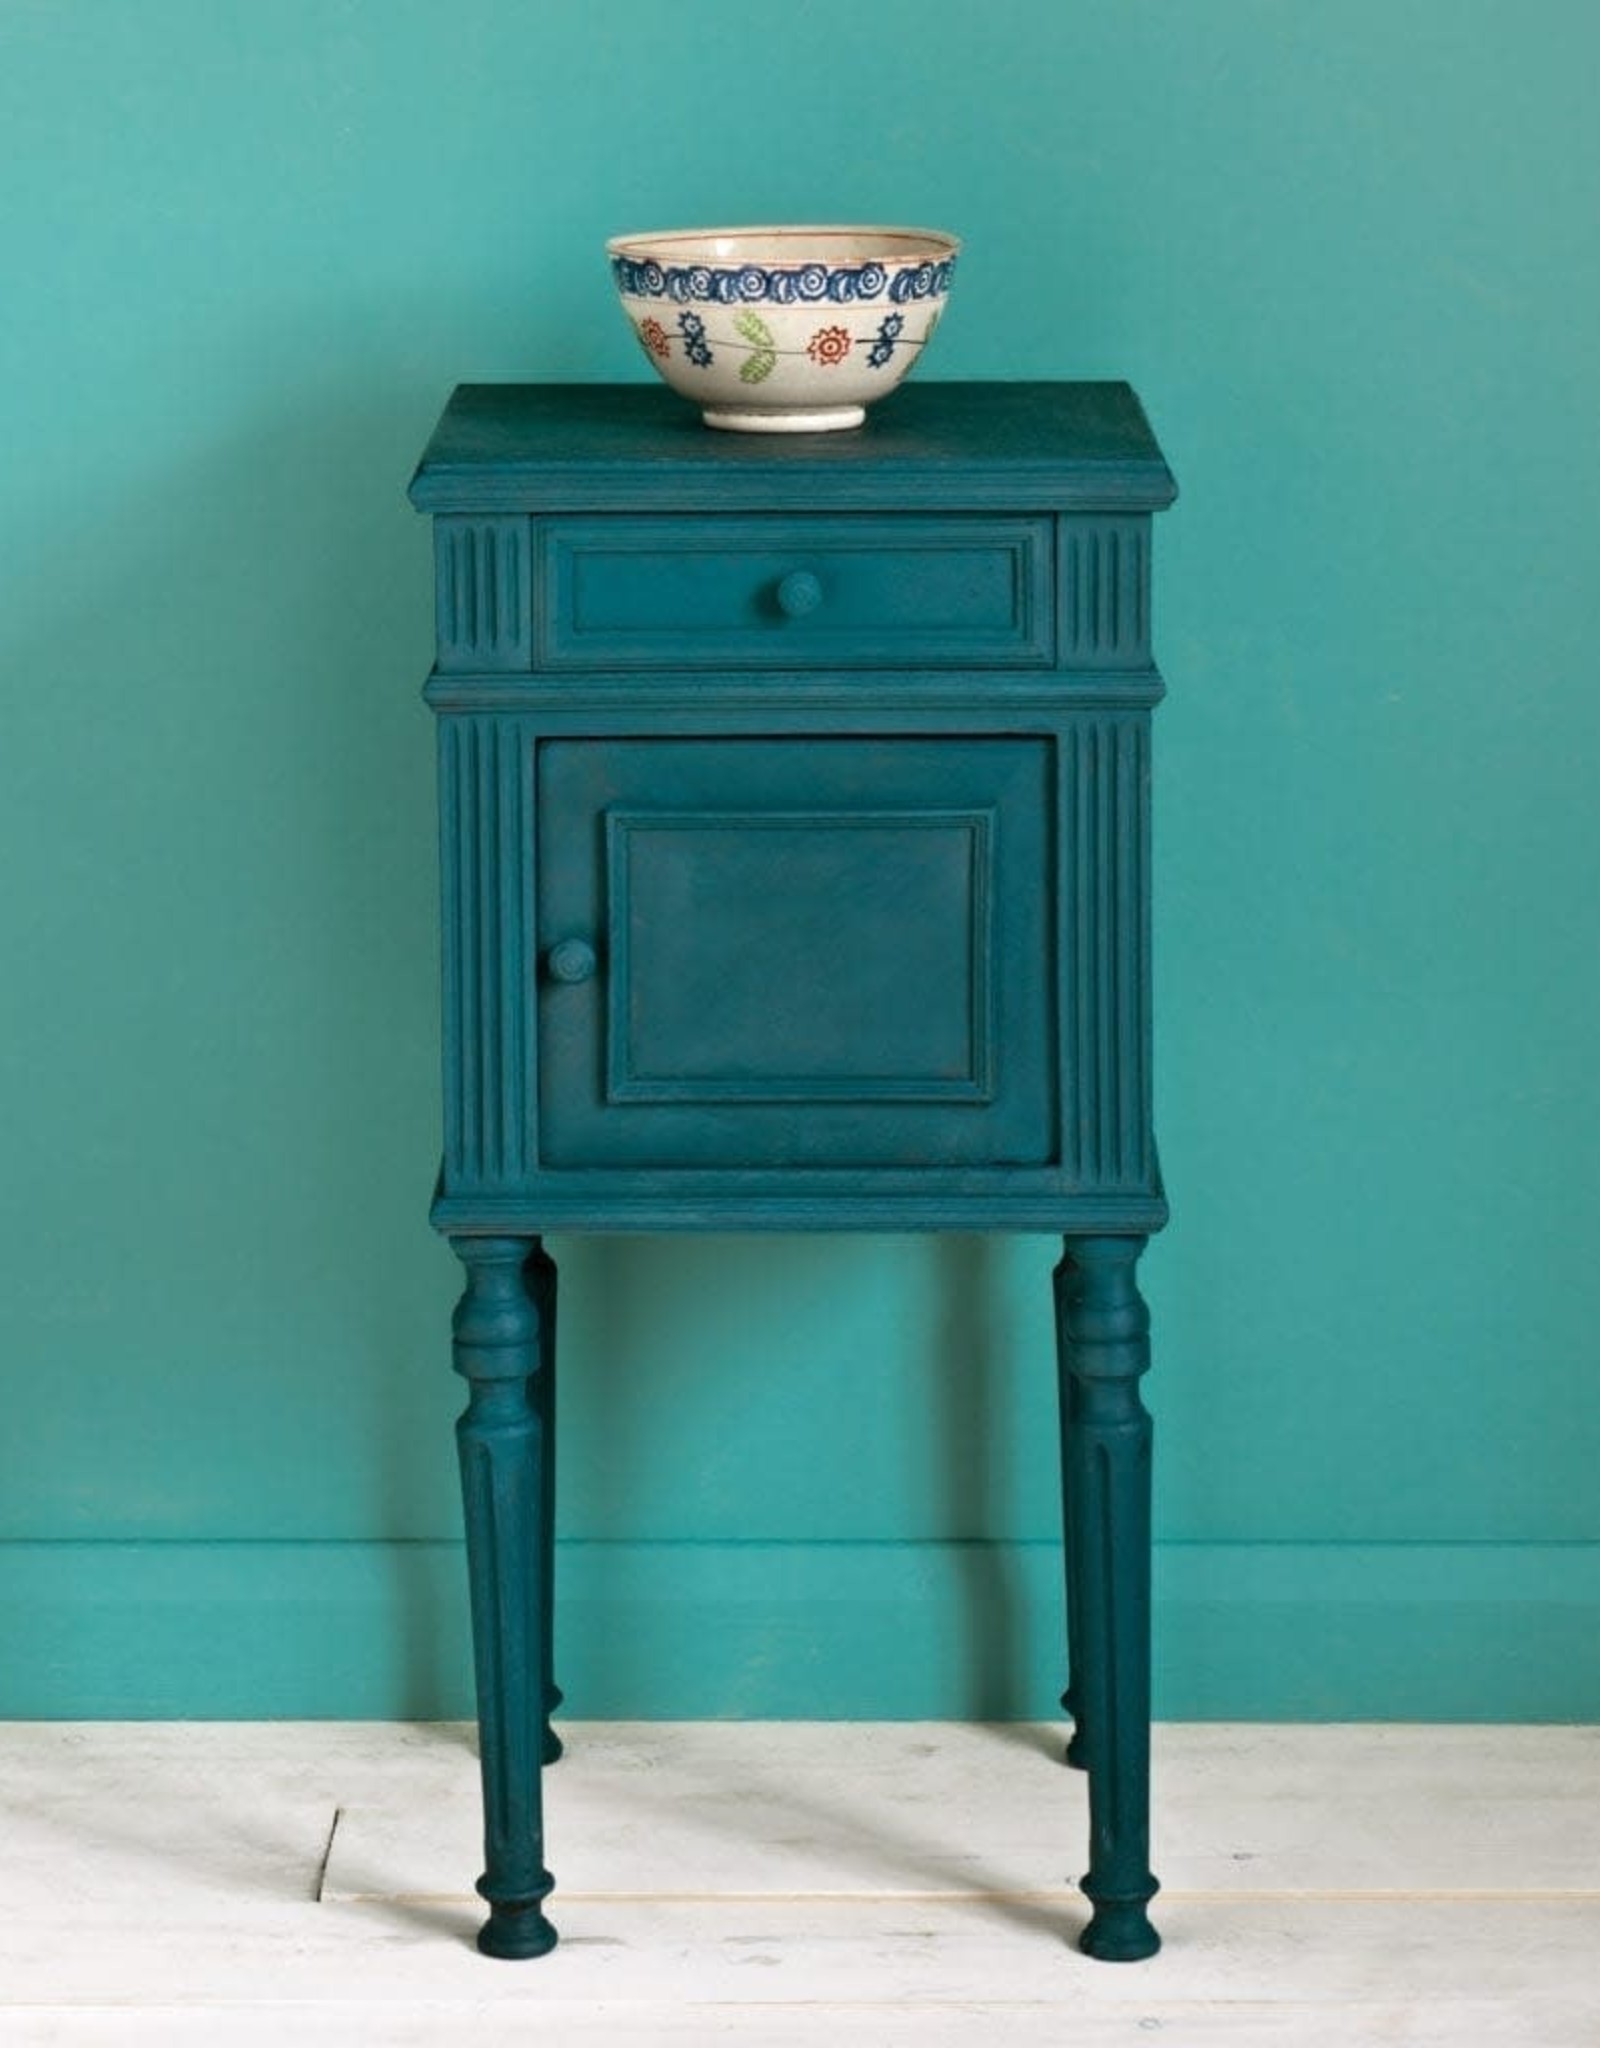 Annie Sloan Aubusson Blue 1L Chalk Paint® by Annie Sloan